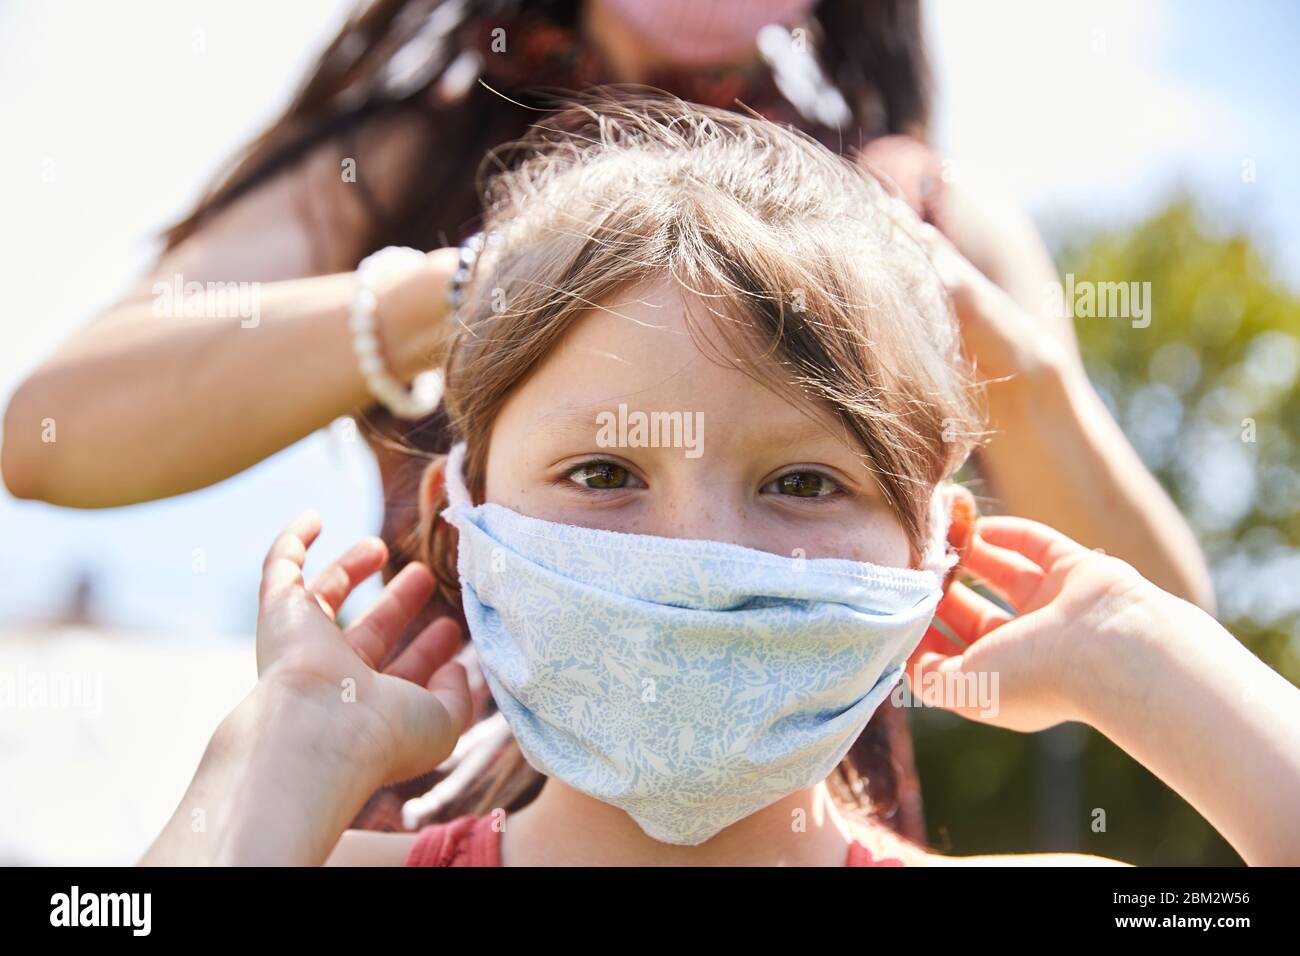 Eine Mutter bindet liebevoll eine Gesichtsmaske an ihre liebenswerte Tochter im Freien in einem Park, um eine Infektion durch Coronavirus zu verhindern Stockfoto